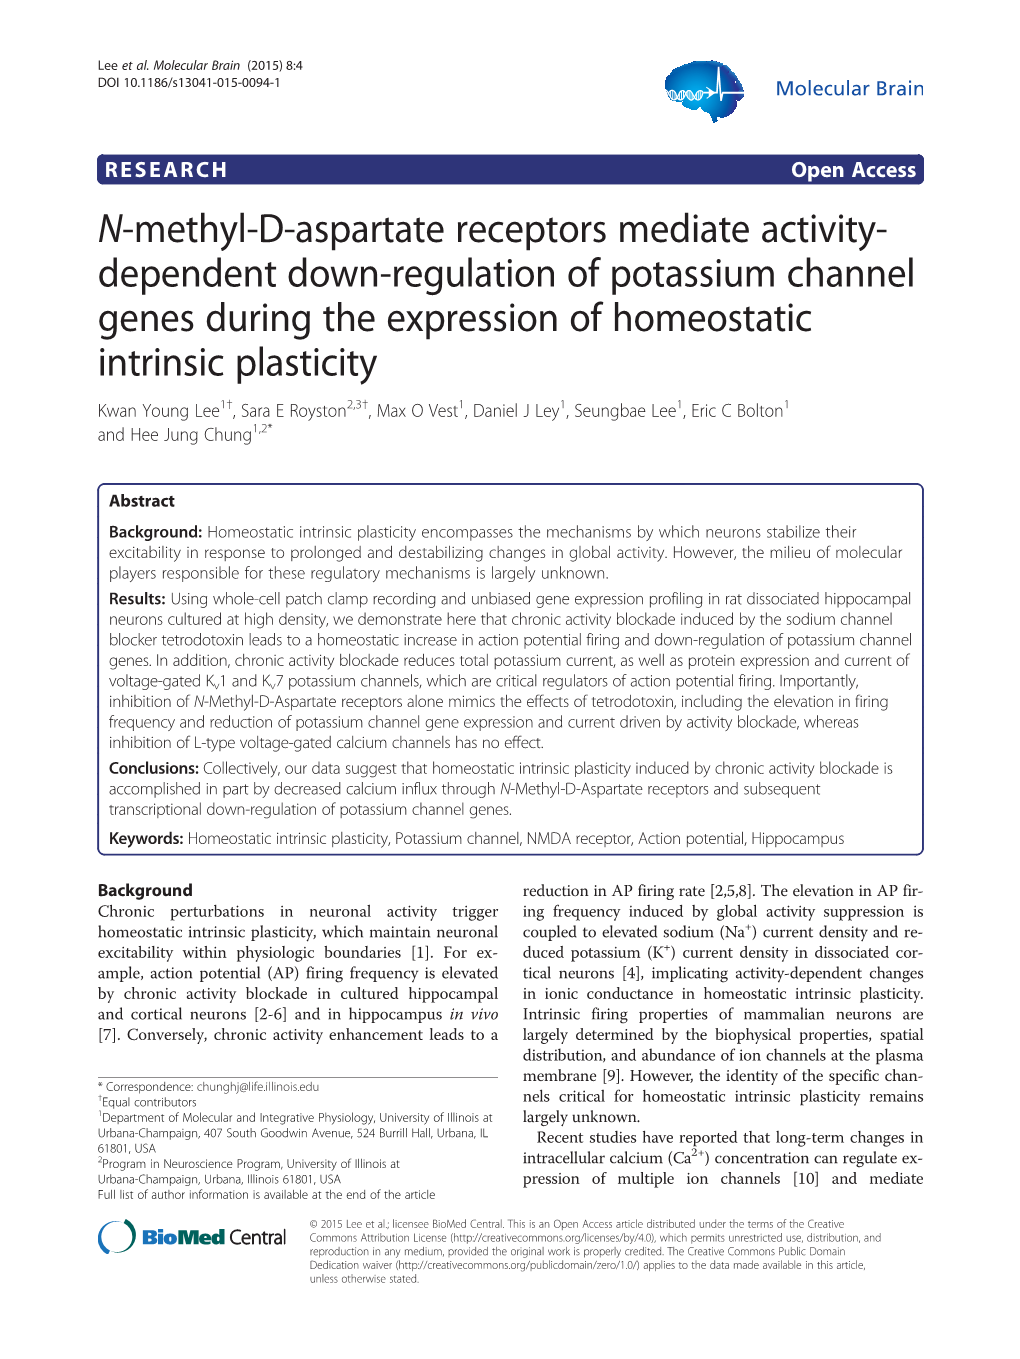 N-Methyl-D-Aspartate Receptors Mediate Activity-Dependent Down